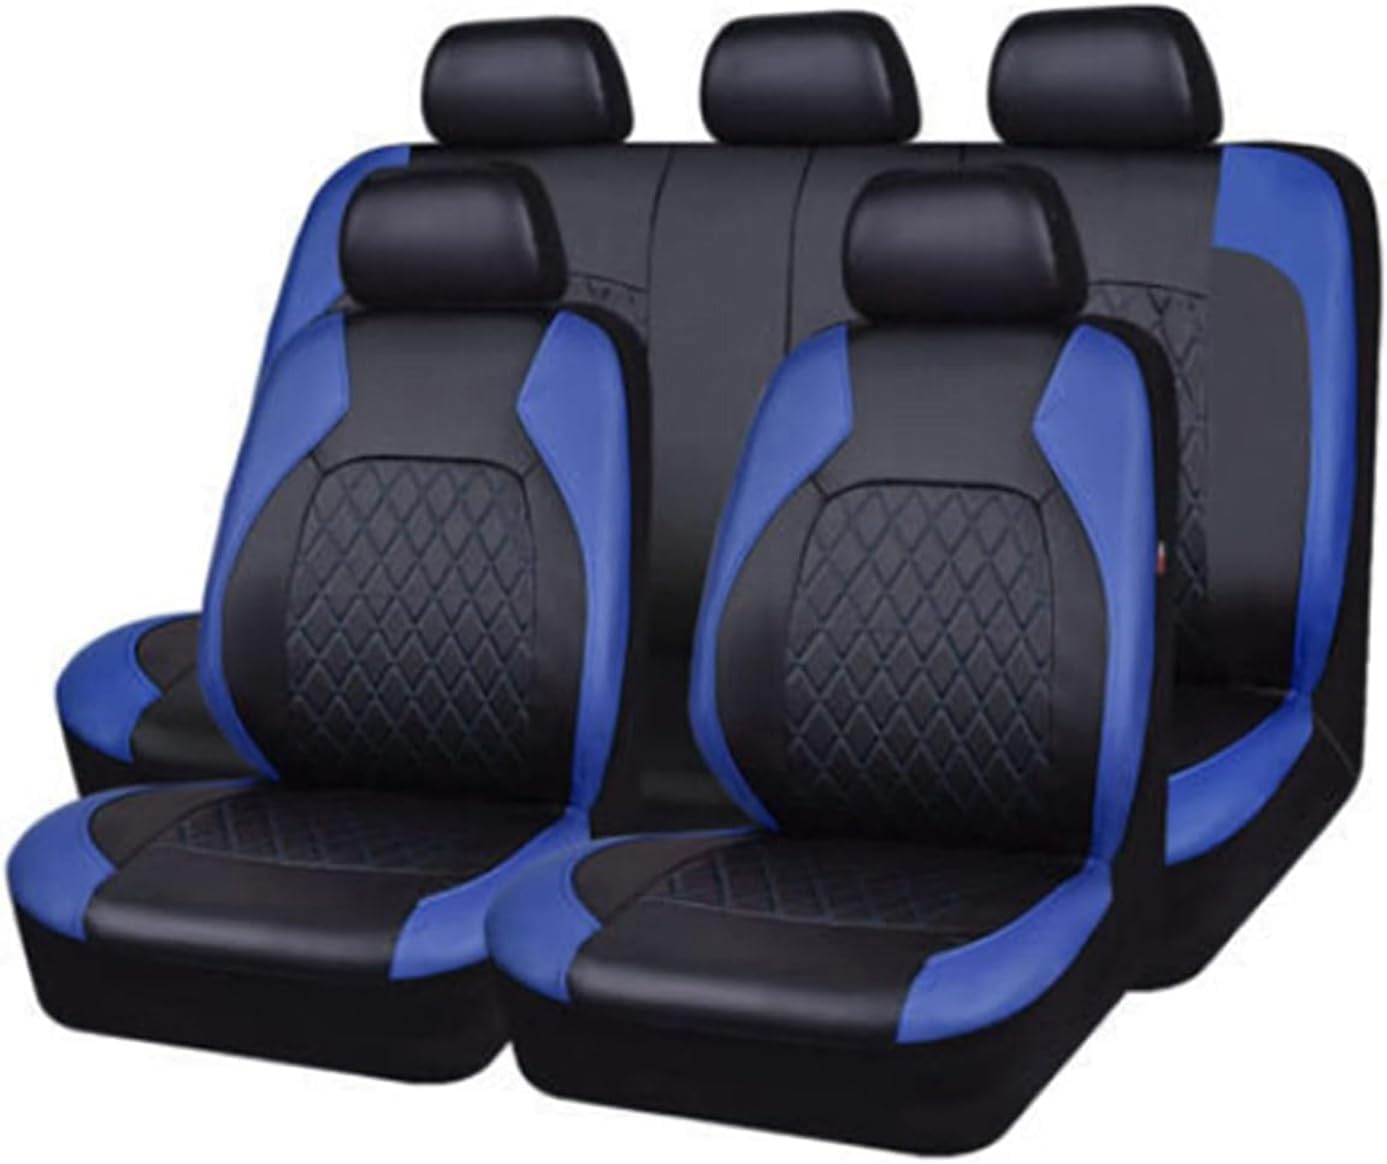 Auto Leder Sitzbezüge für Nissan Navara D22 Navara D40 Navara D40 S Navara Np300 Navara, 9 Stück Allwetter rutschfest Wasserdicht Atmungsaktiv Schonbezug Set Sitzkissenschutz,C/Blue von SARCX